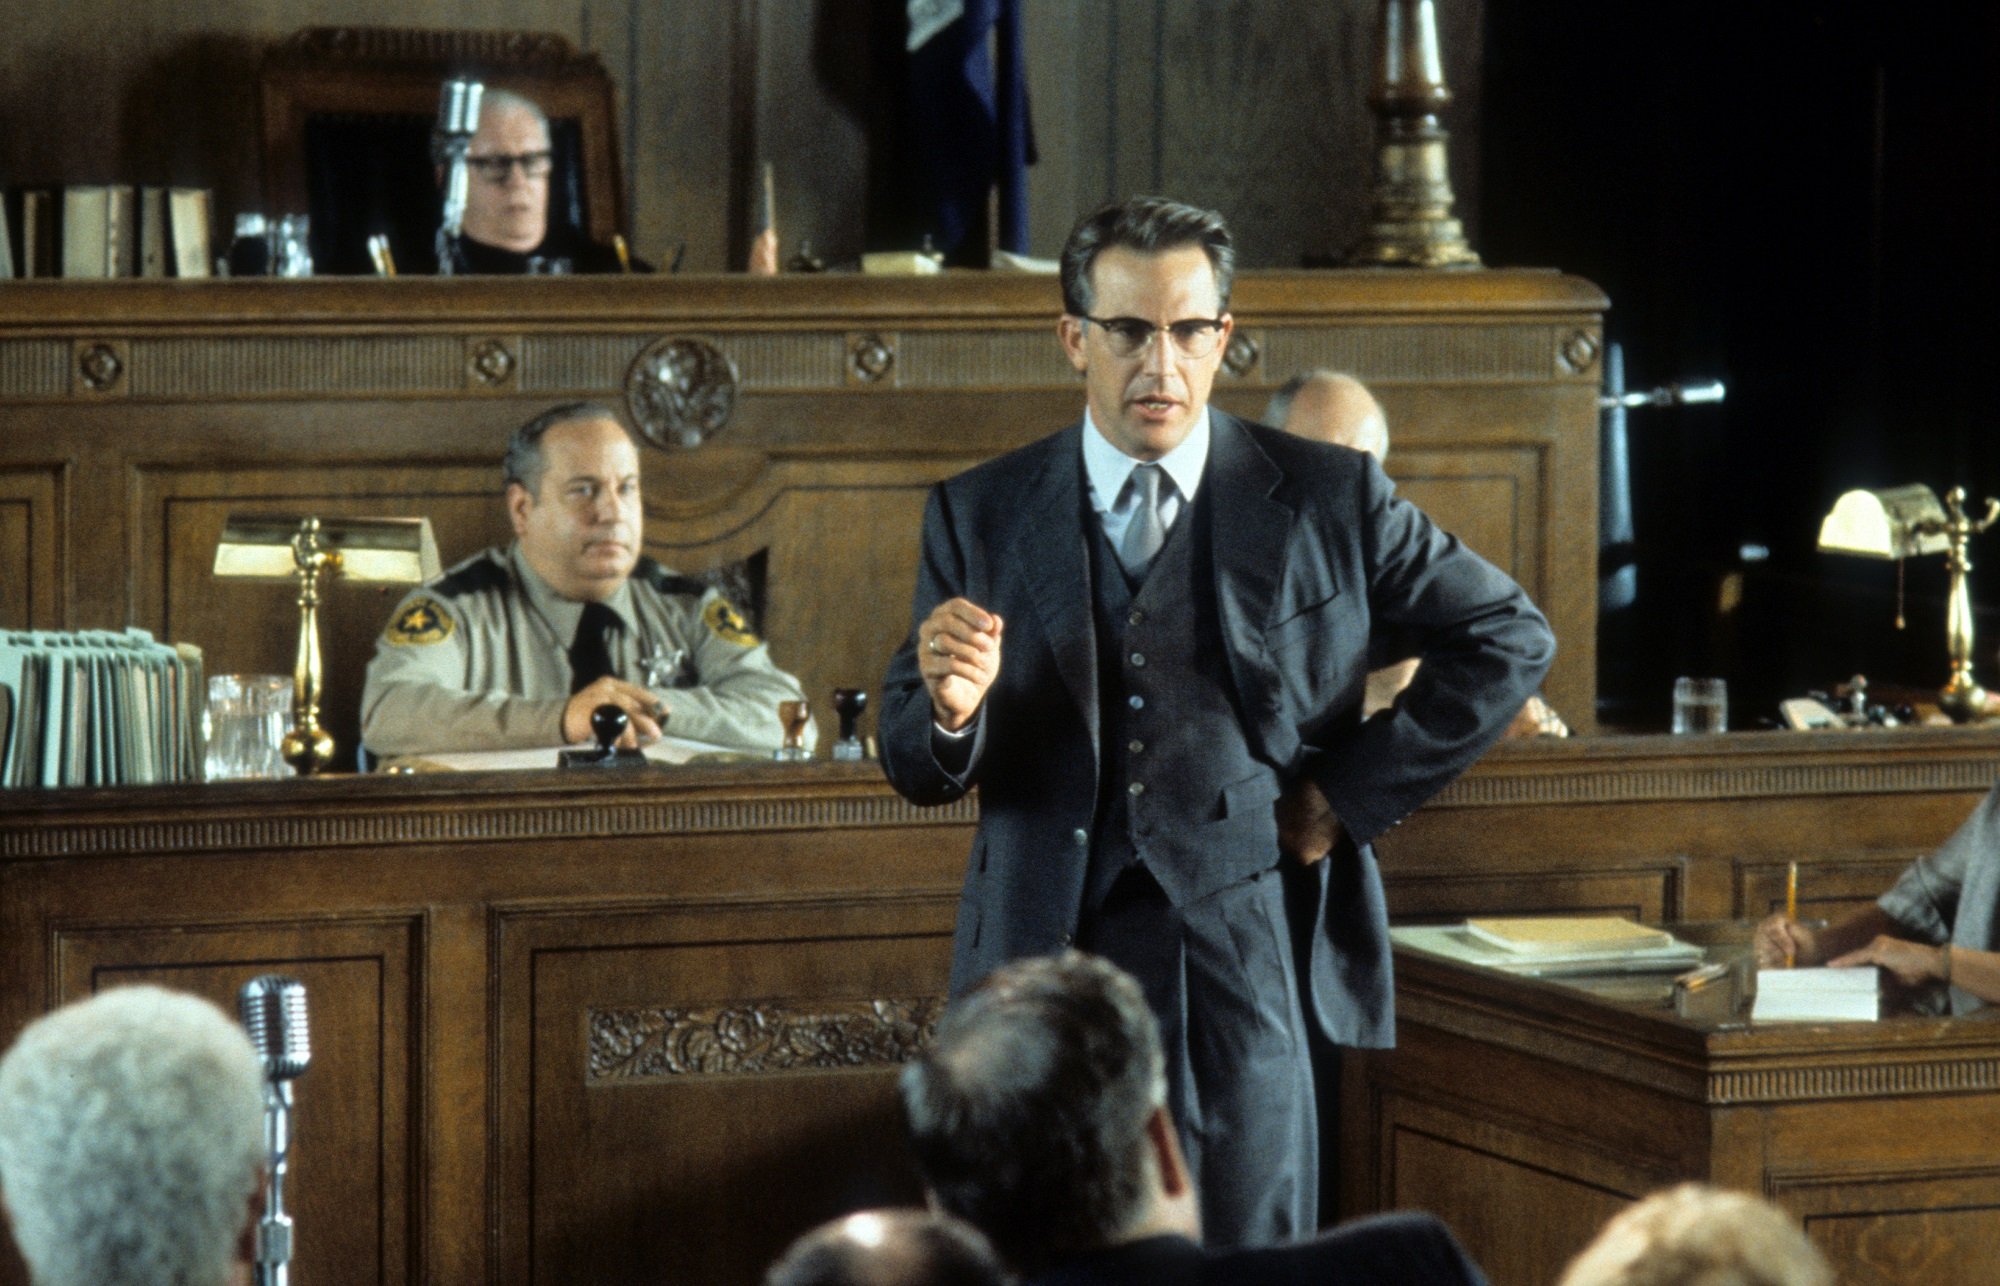 Kevin Costner in the JFK courtroom scene